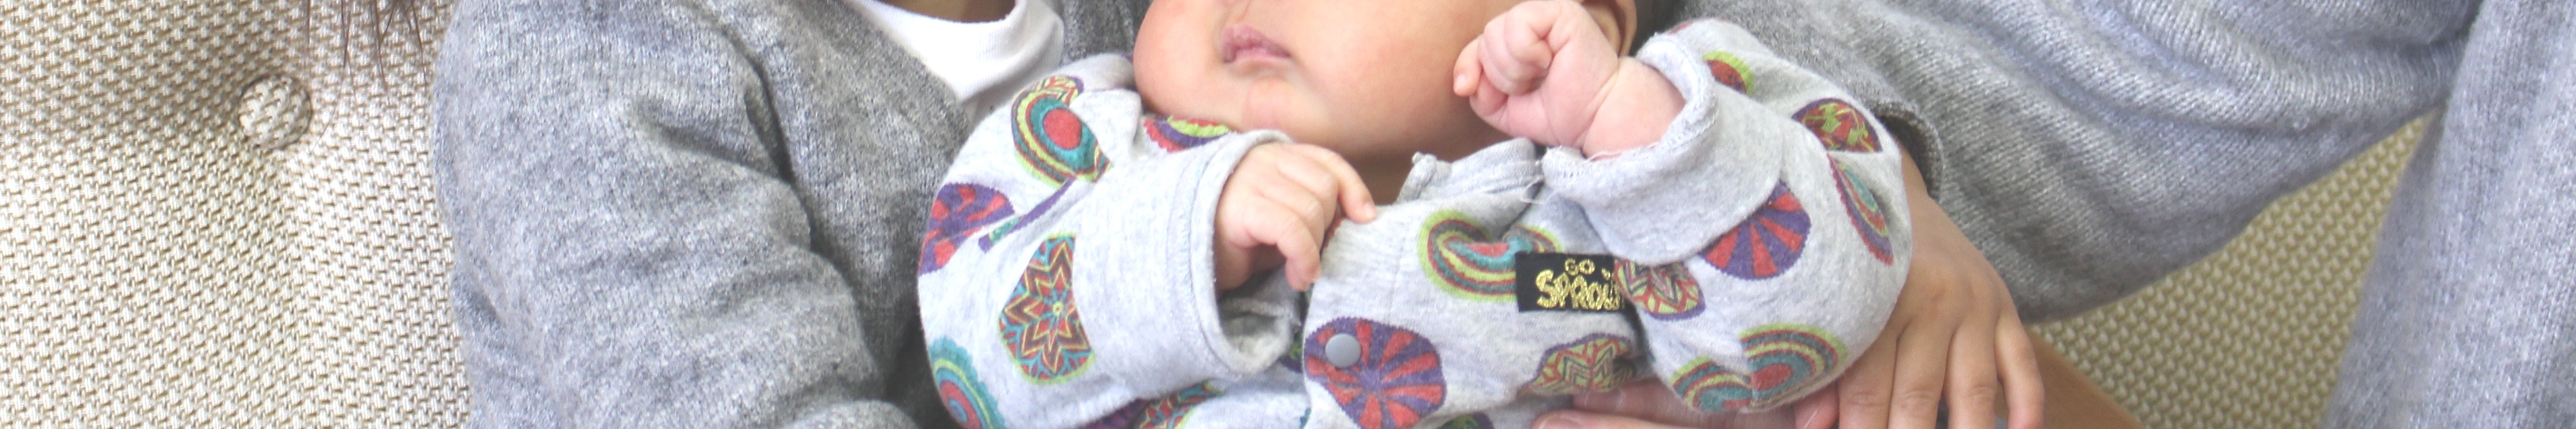 出産支援(写真:母親に抱かれている新生児)